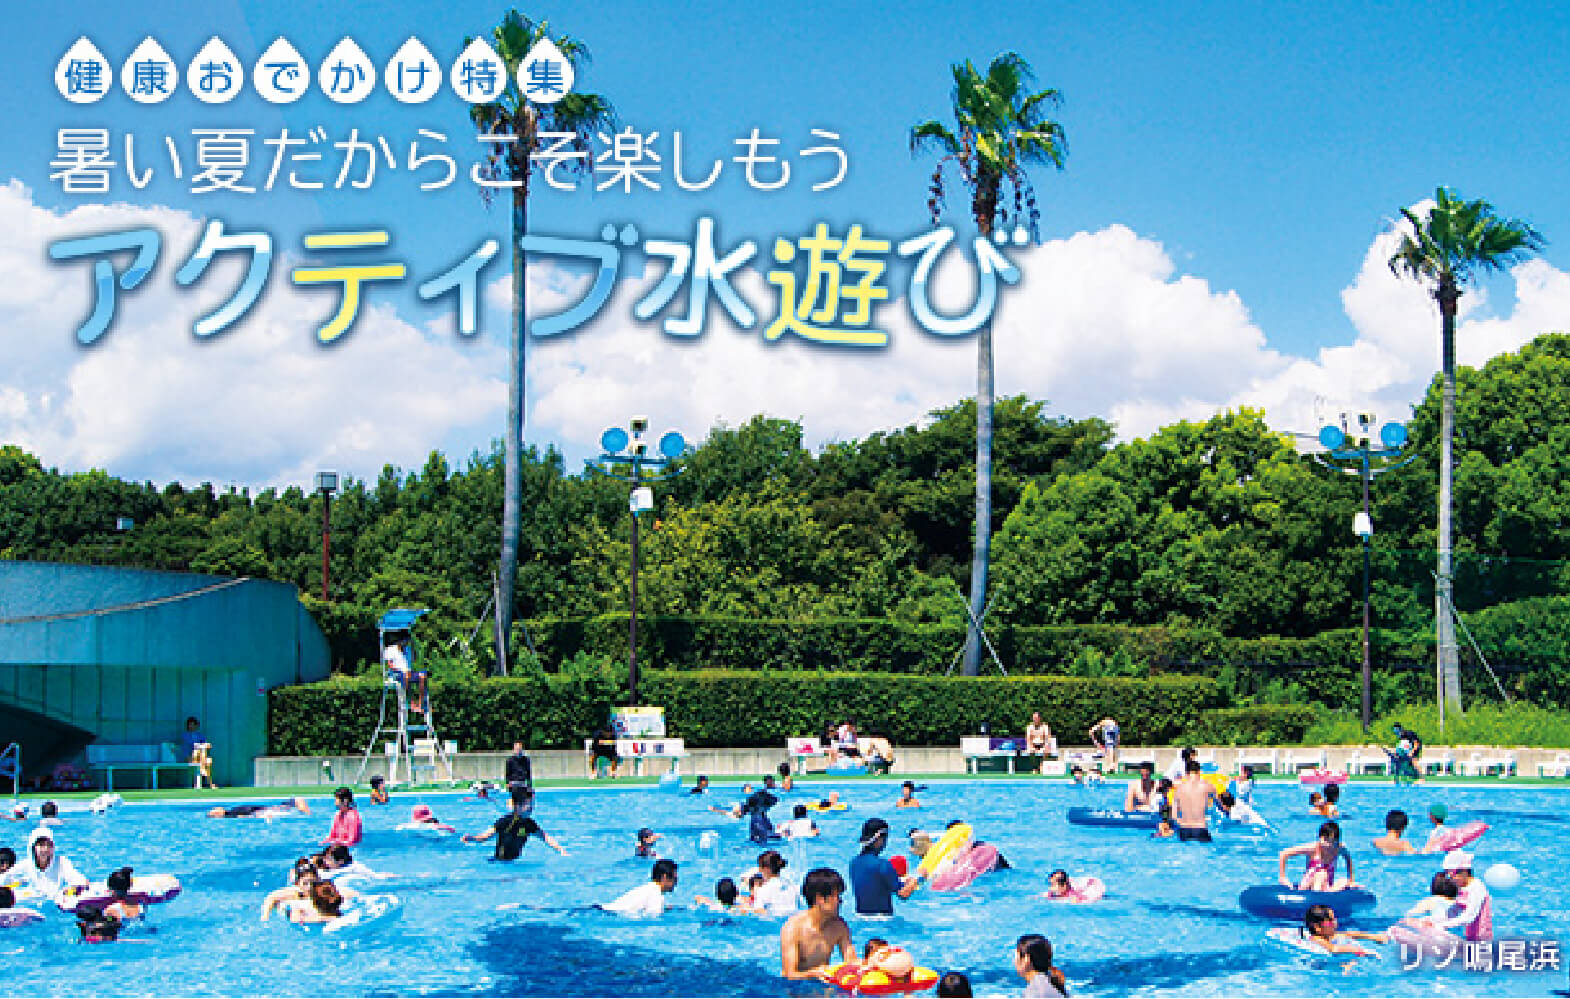 特集 暑い夏だからこそ楽しもう アクティブ水遊び 阪急阪神沿線wellnessプラス